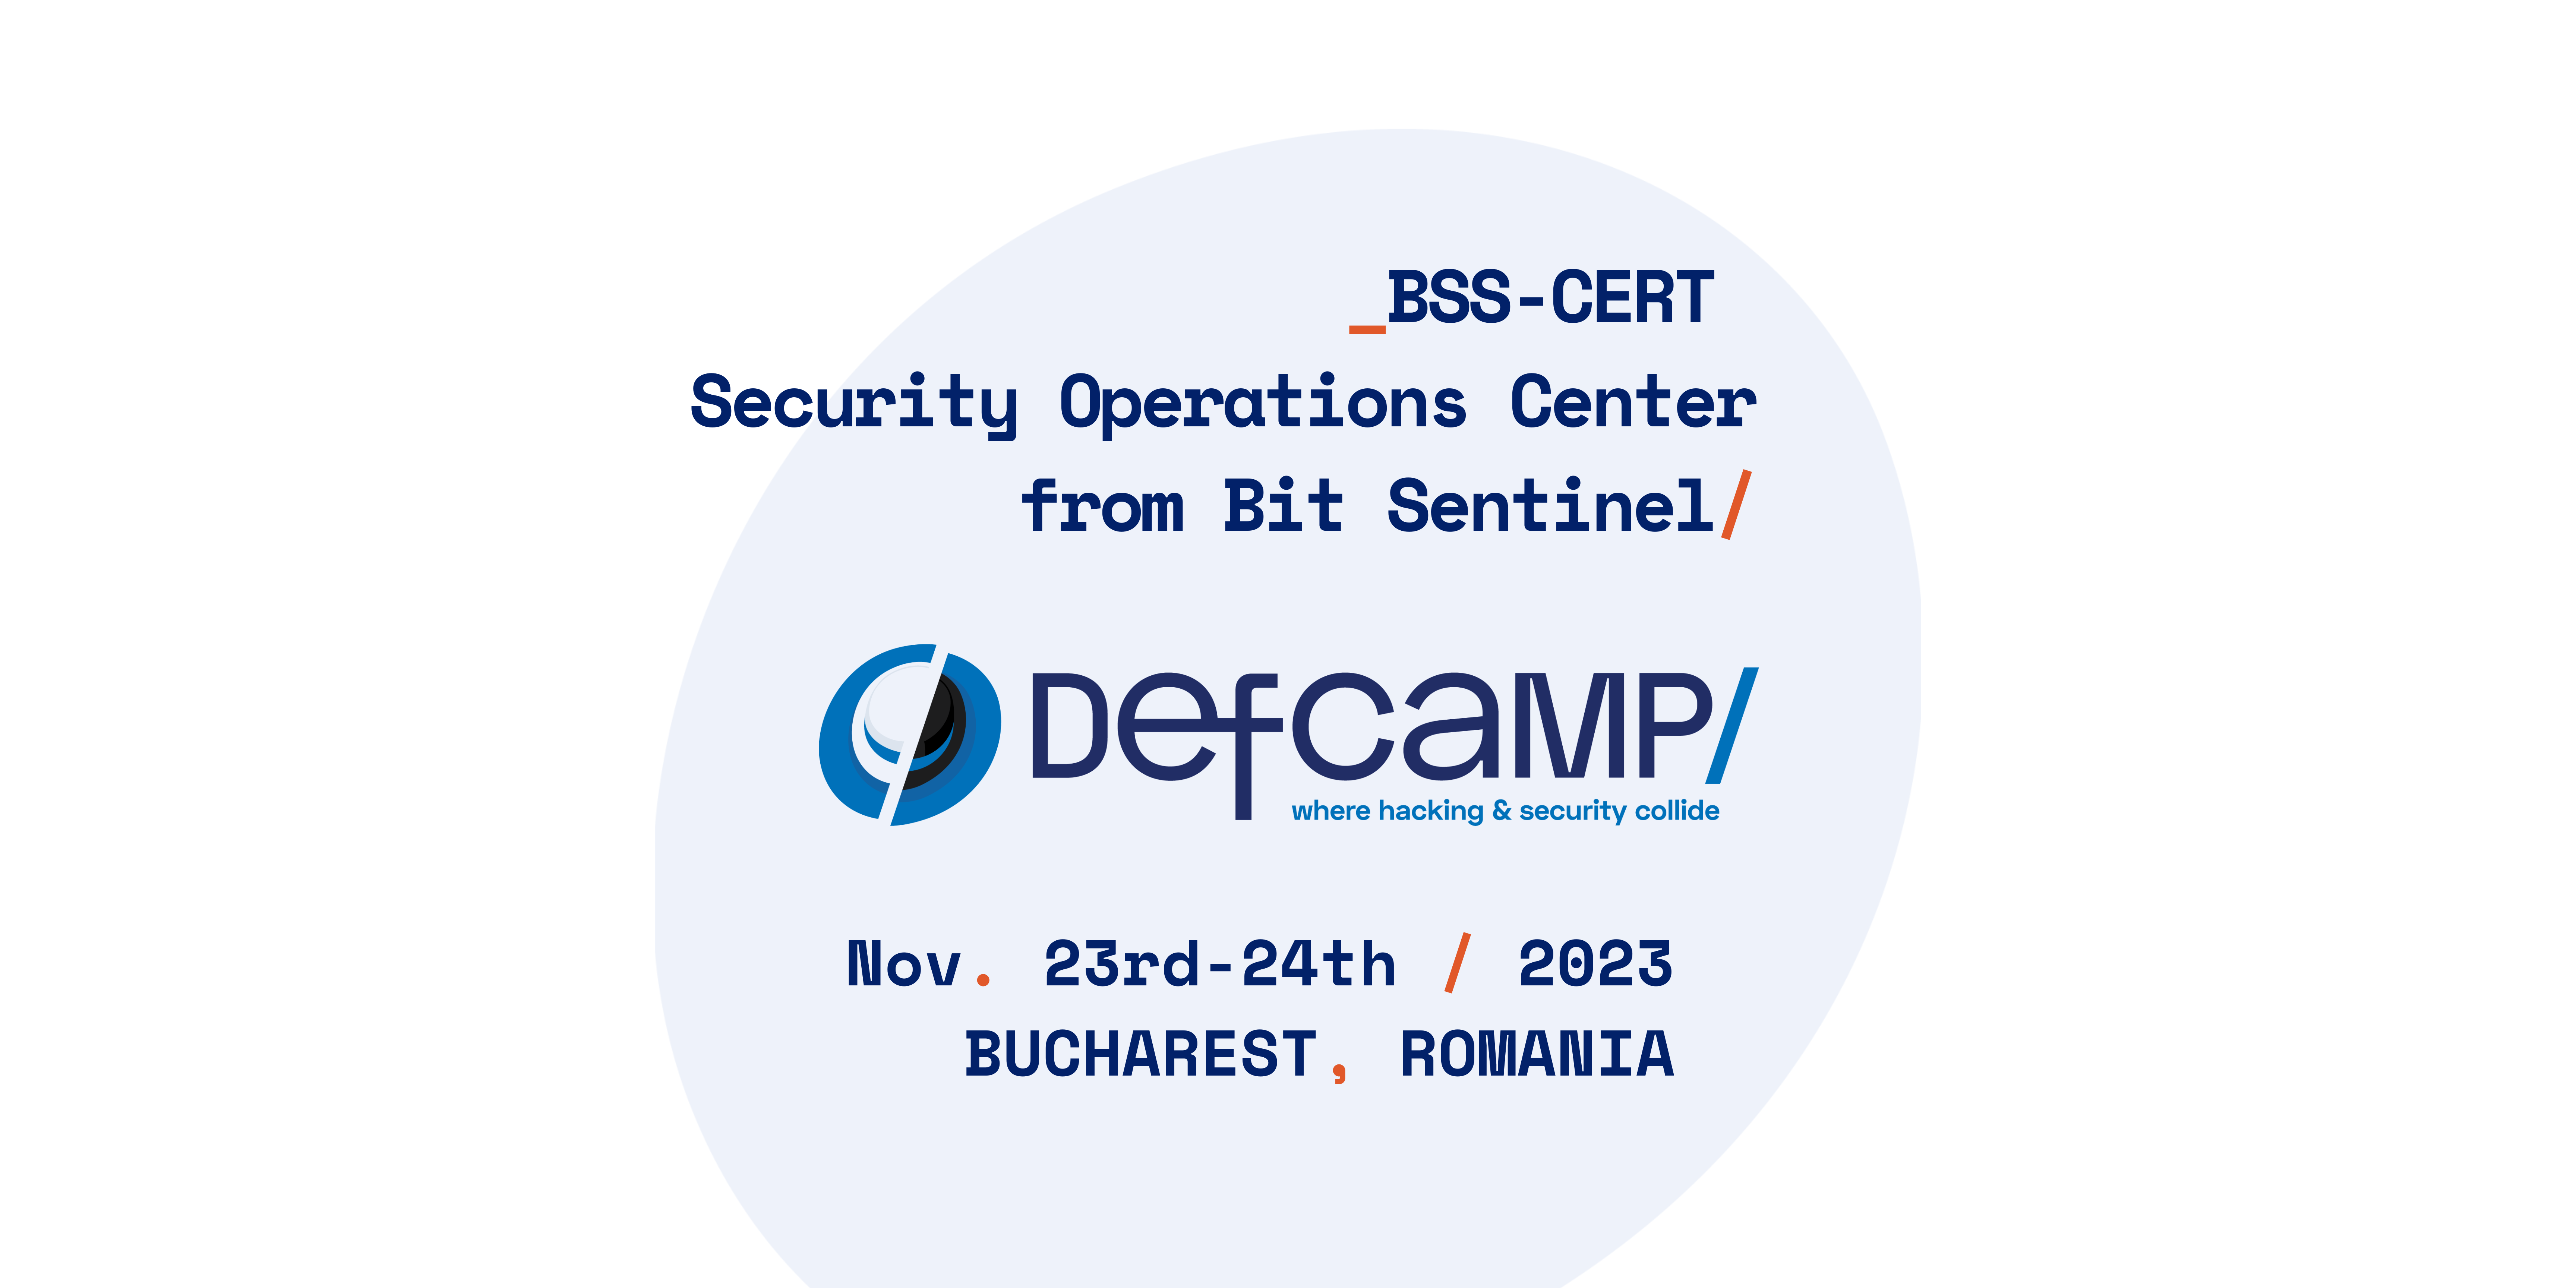 BSS CERT DefCamp 2023